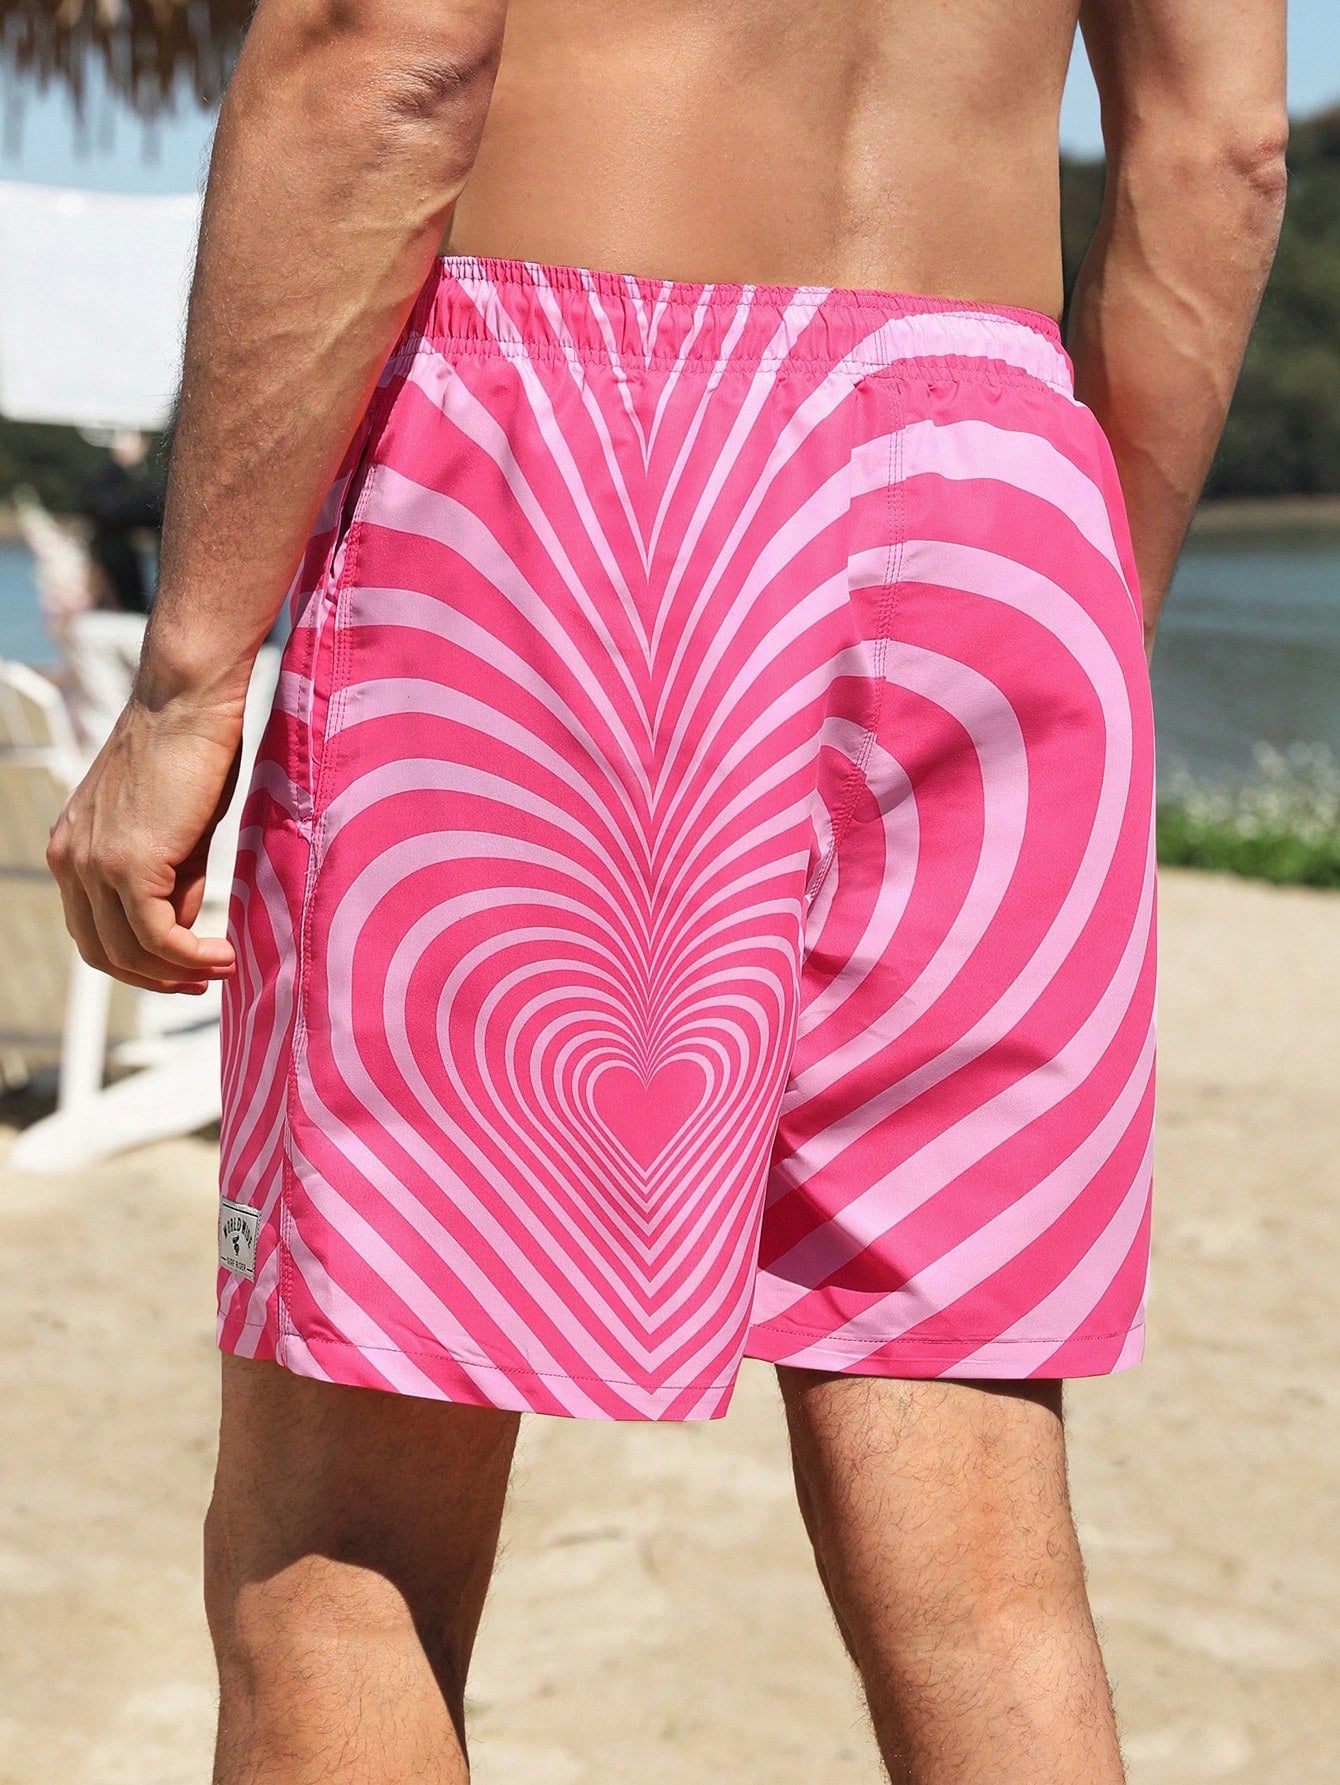 Boho Heart Printed Swim Trunks for Women & Men - Drawstring Waist, All Over Print, Short Length